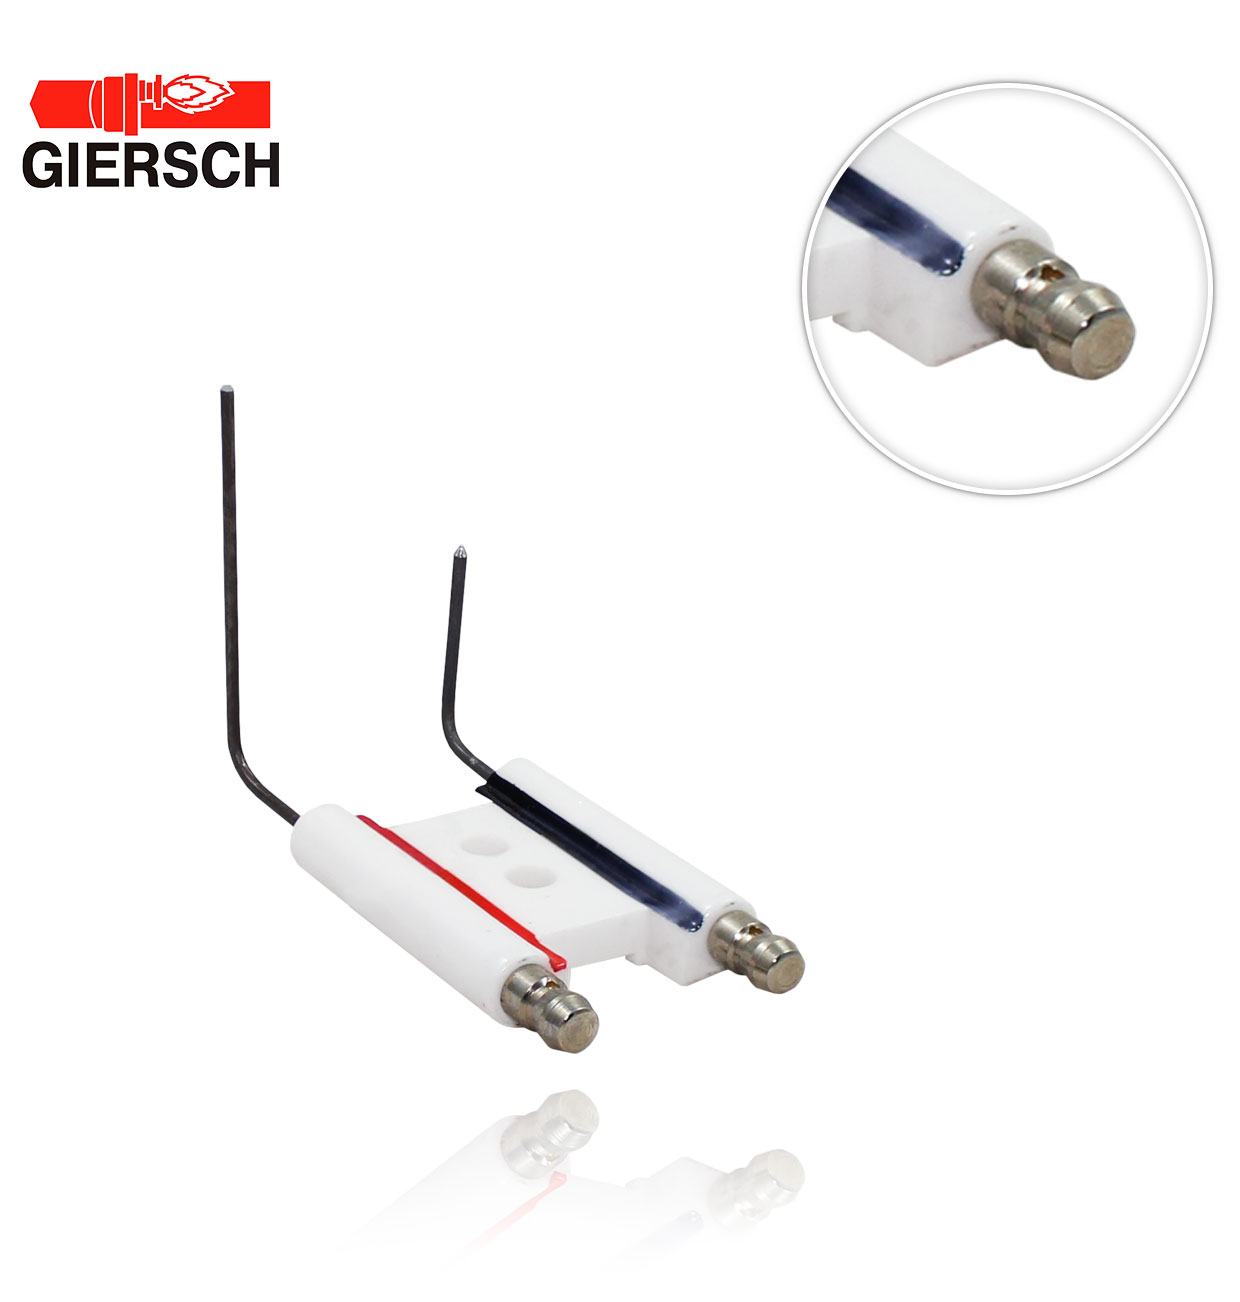 GIERSCHRG-30-Z(-M)-LN 43-50-21230 ELECTRODE